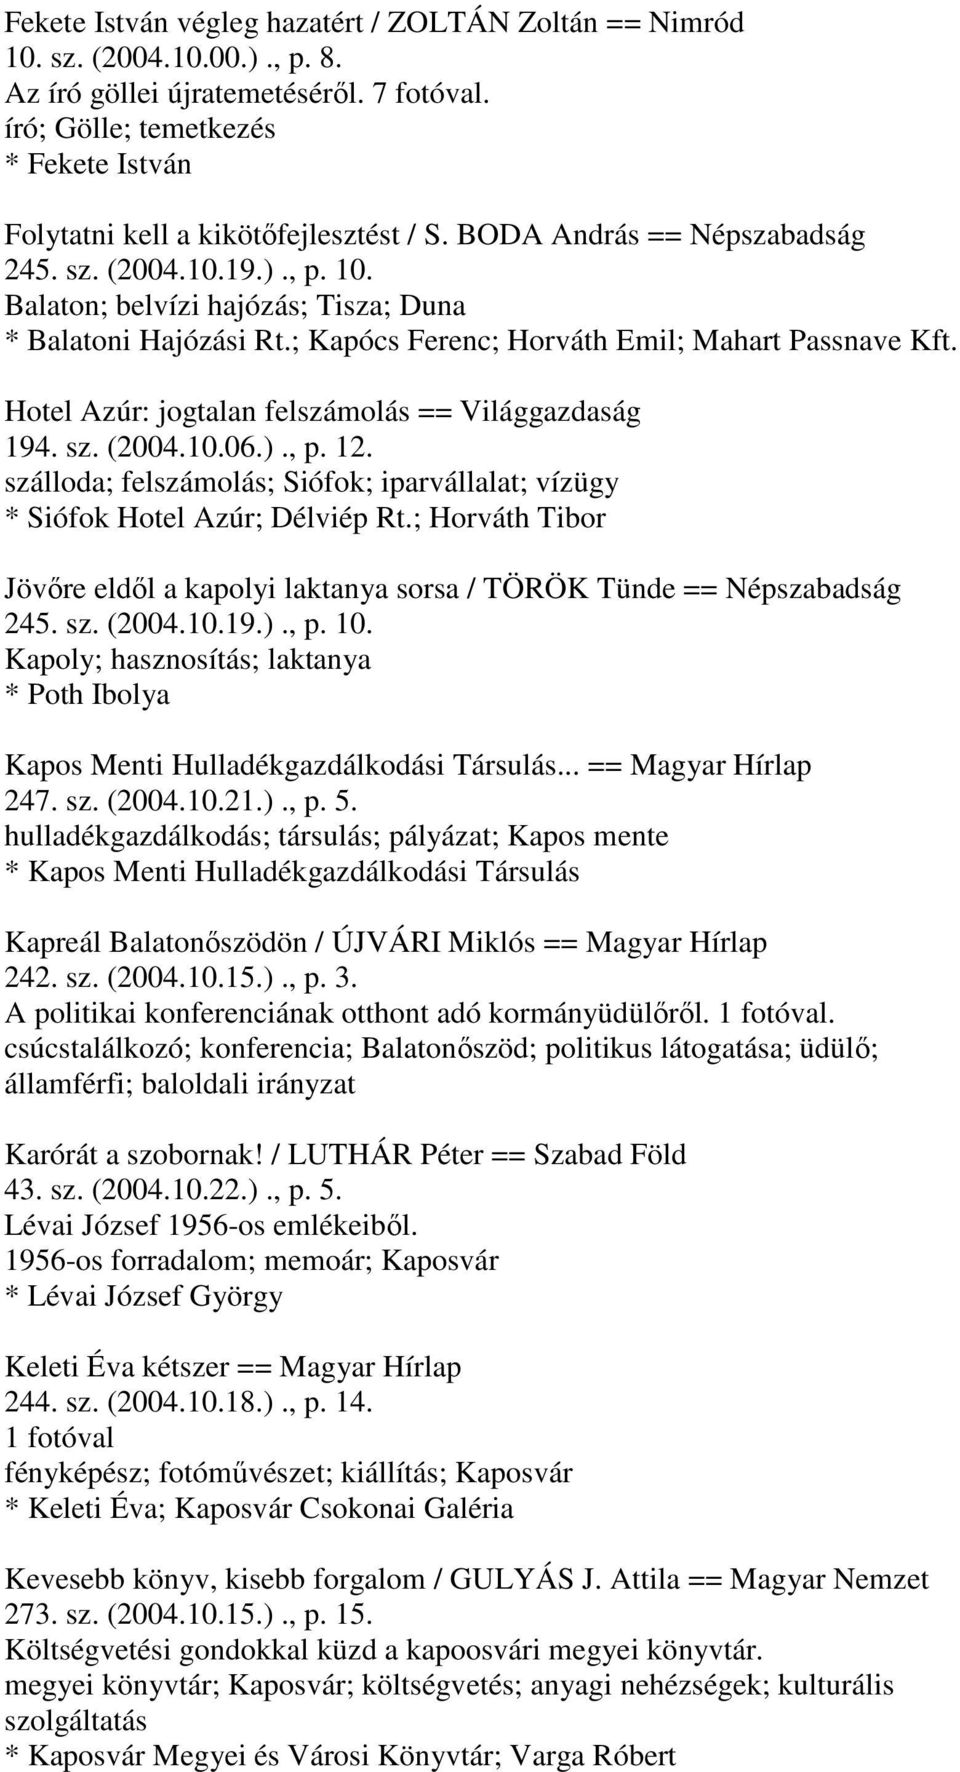 ; Kapócs Ferenc; Horváth Emil; Mahart Passnave Kft. Hotel Azúr: jogtalan felszámolás == Világgazdaság 194. sz. (2004.10.06.)., p. 12.